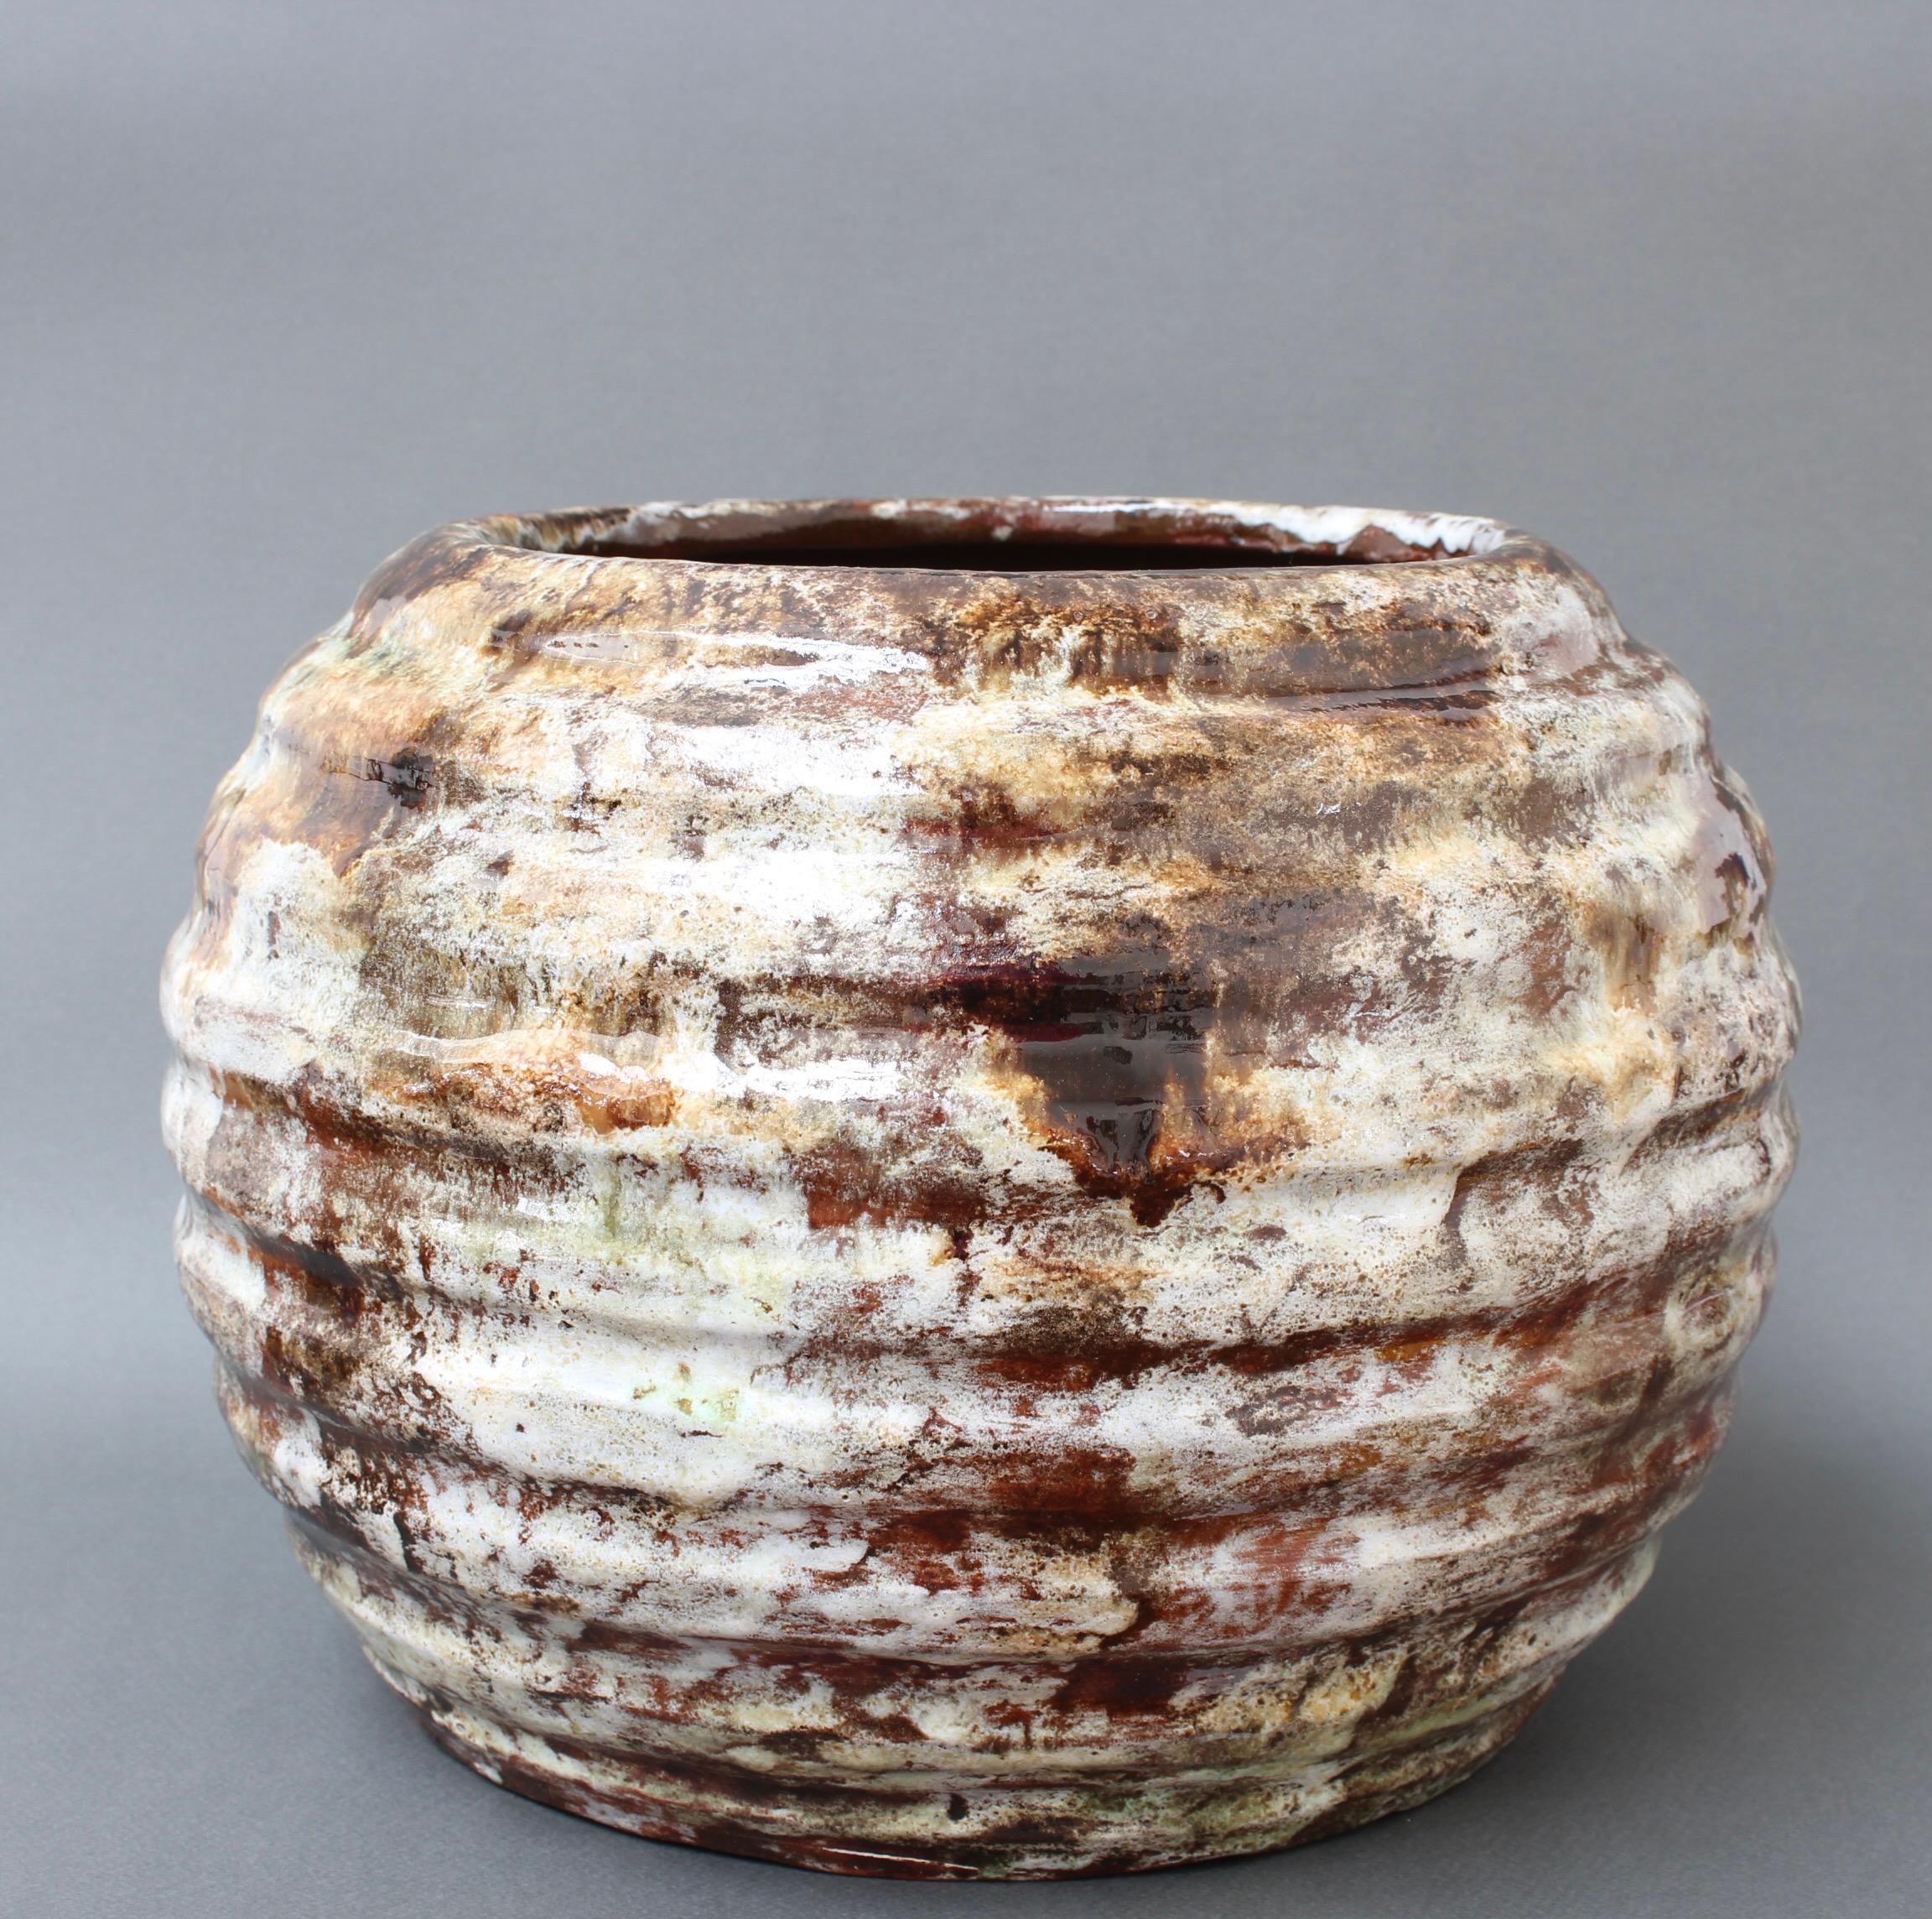 Große französische Vase oder Übertopf aus Keramik von Alexandre Kostanda, Vallauris, Frankreich (ca. 1950er Jahre). Kostanda schuf in seinem charakteristischen, rustikalen Stil aus natürlichem Ton wunderschöne, originelle Gefäße wie Vasen, Krüge und